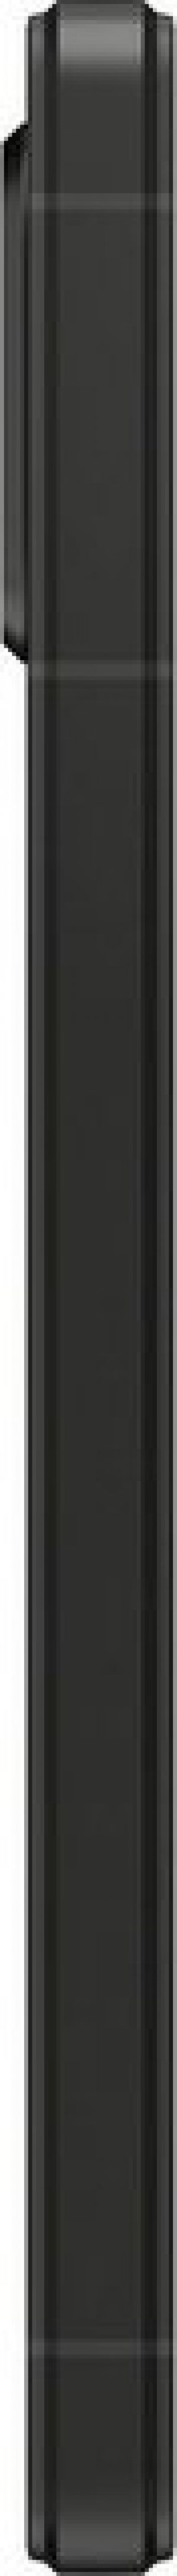 Sony XPERIA 5V Smartphone (15,49 cm/6,1 Zoll, 128 GB Speicherplatz, 12 MP Kamera)